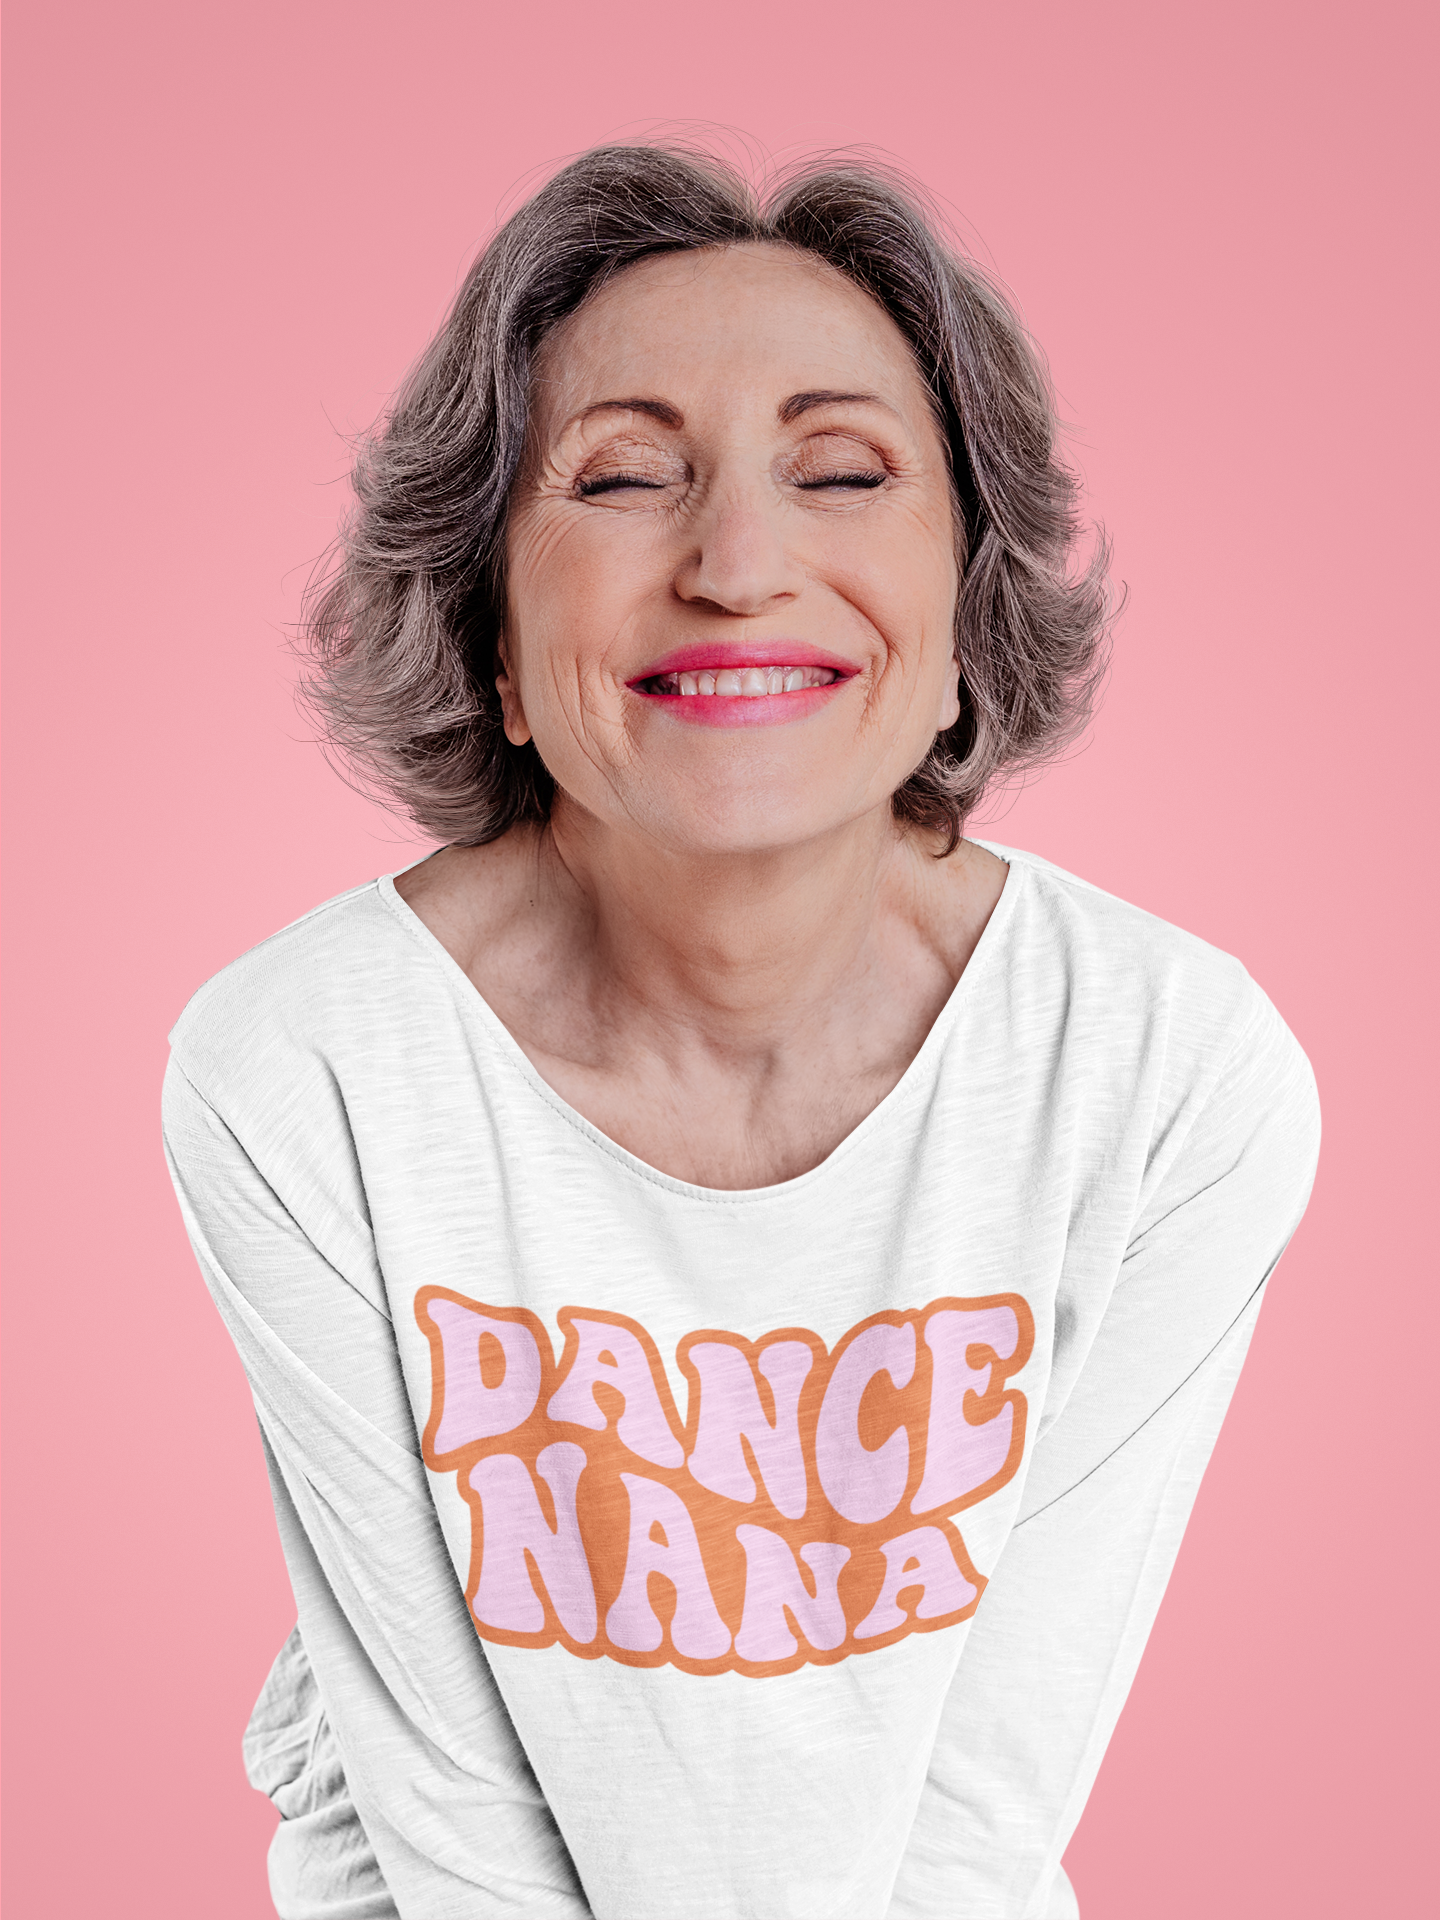 Dance Nana Digital Download Design File